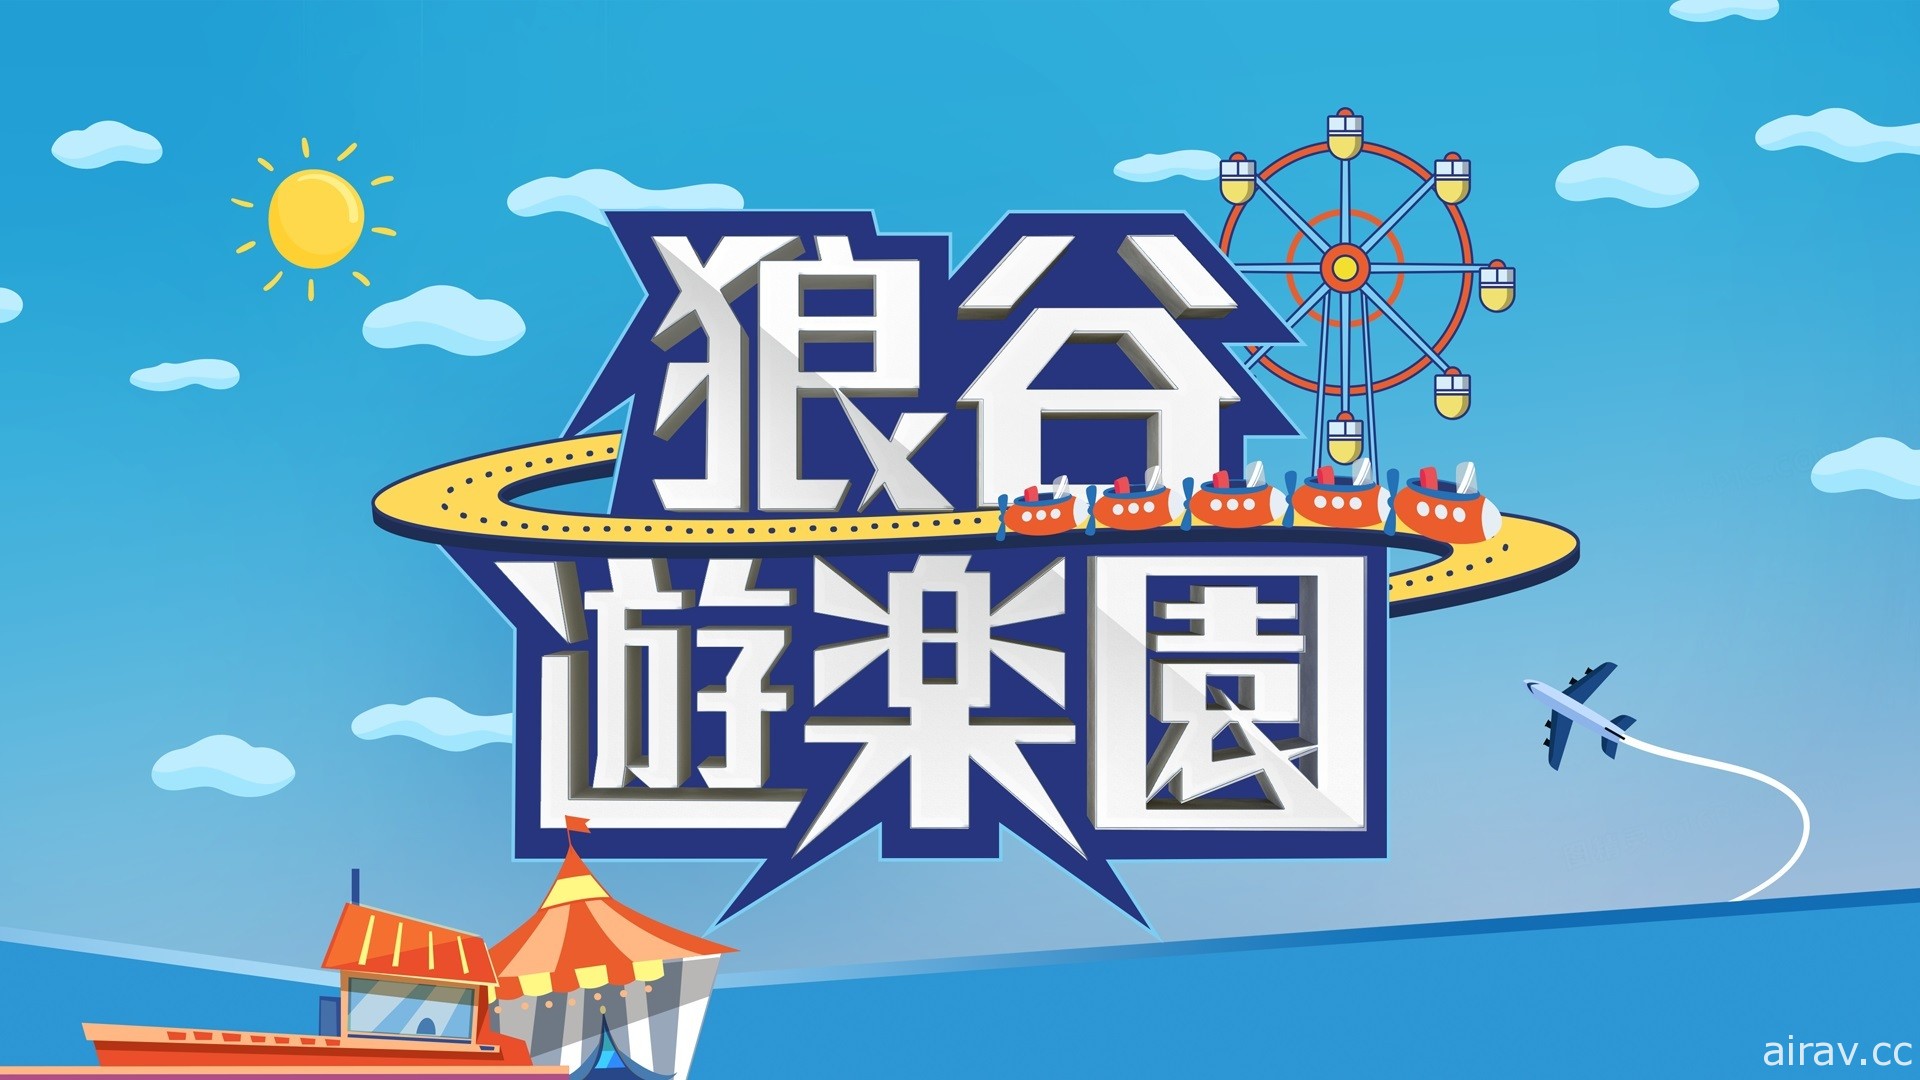 狼谷娛樂新節目「狼谷遊樂園」首集邀請「超負荷」 預定今晚播出